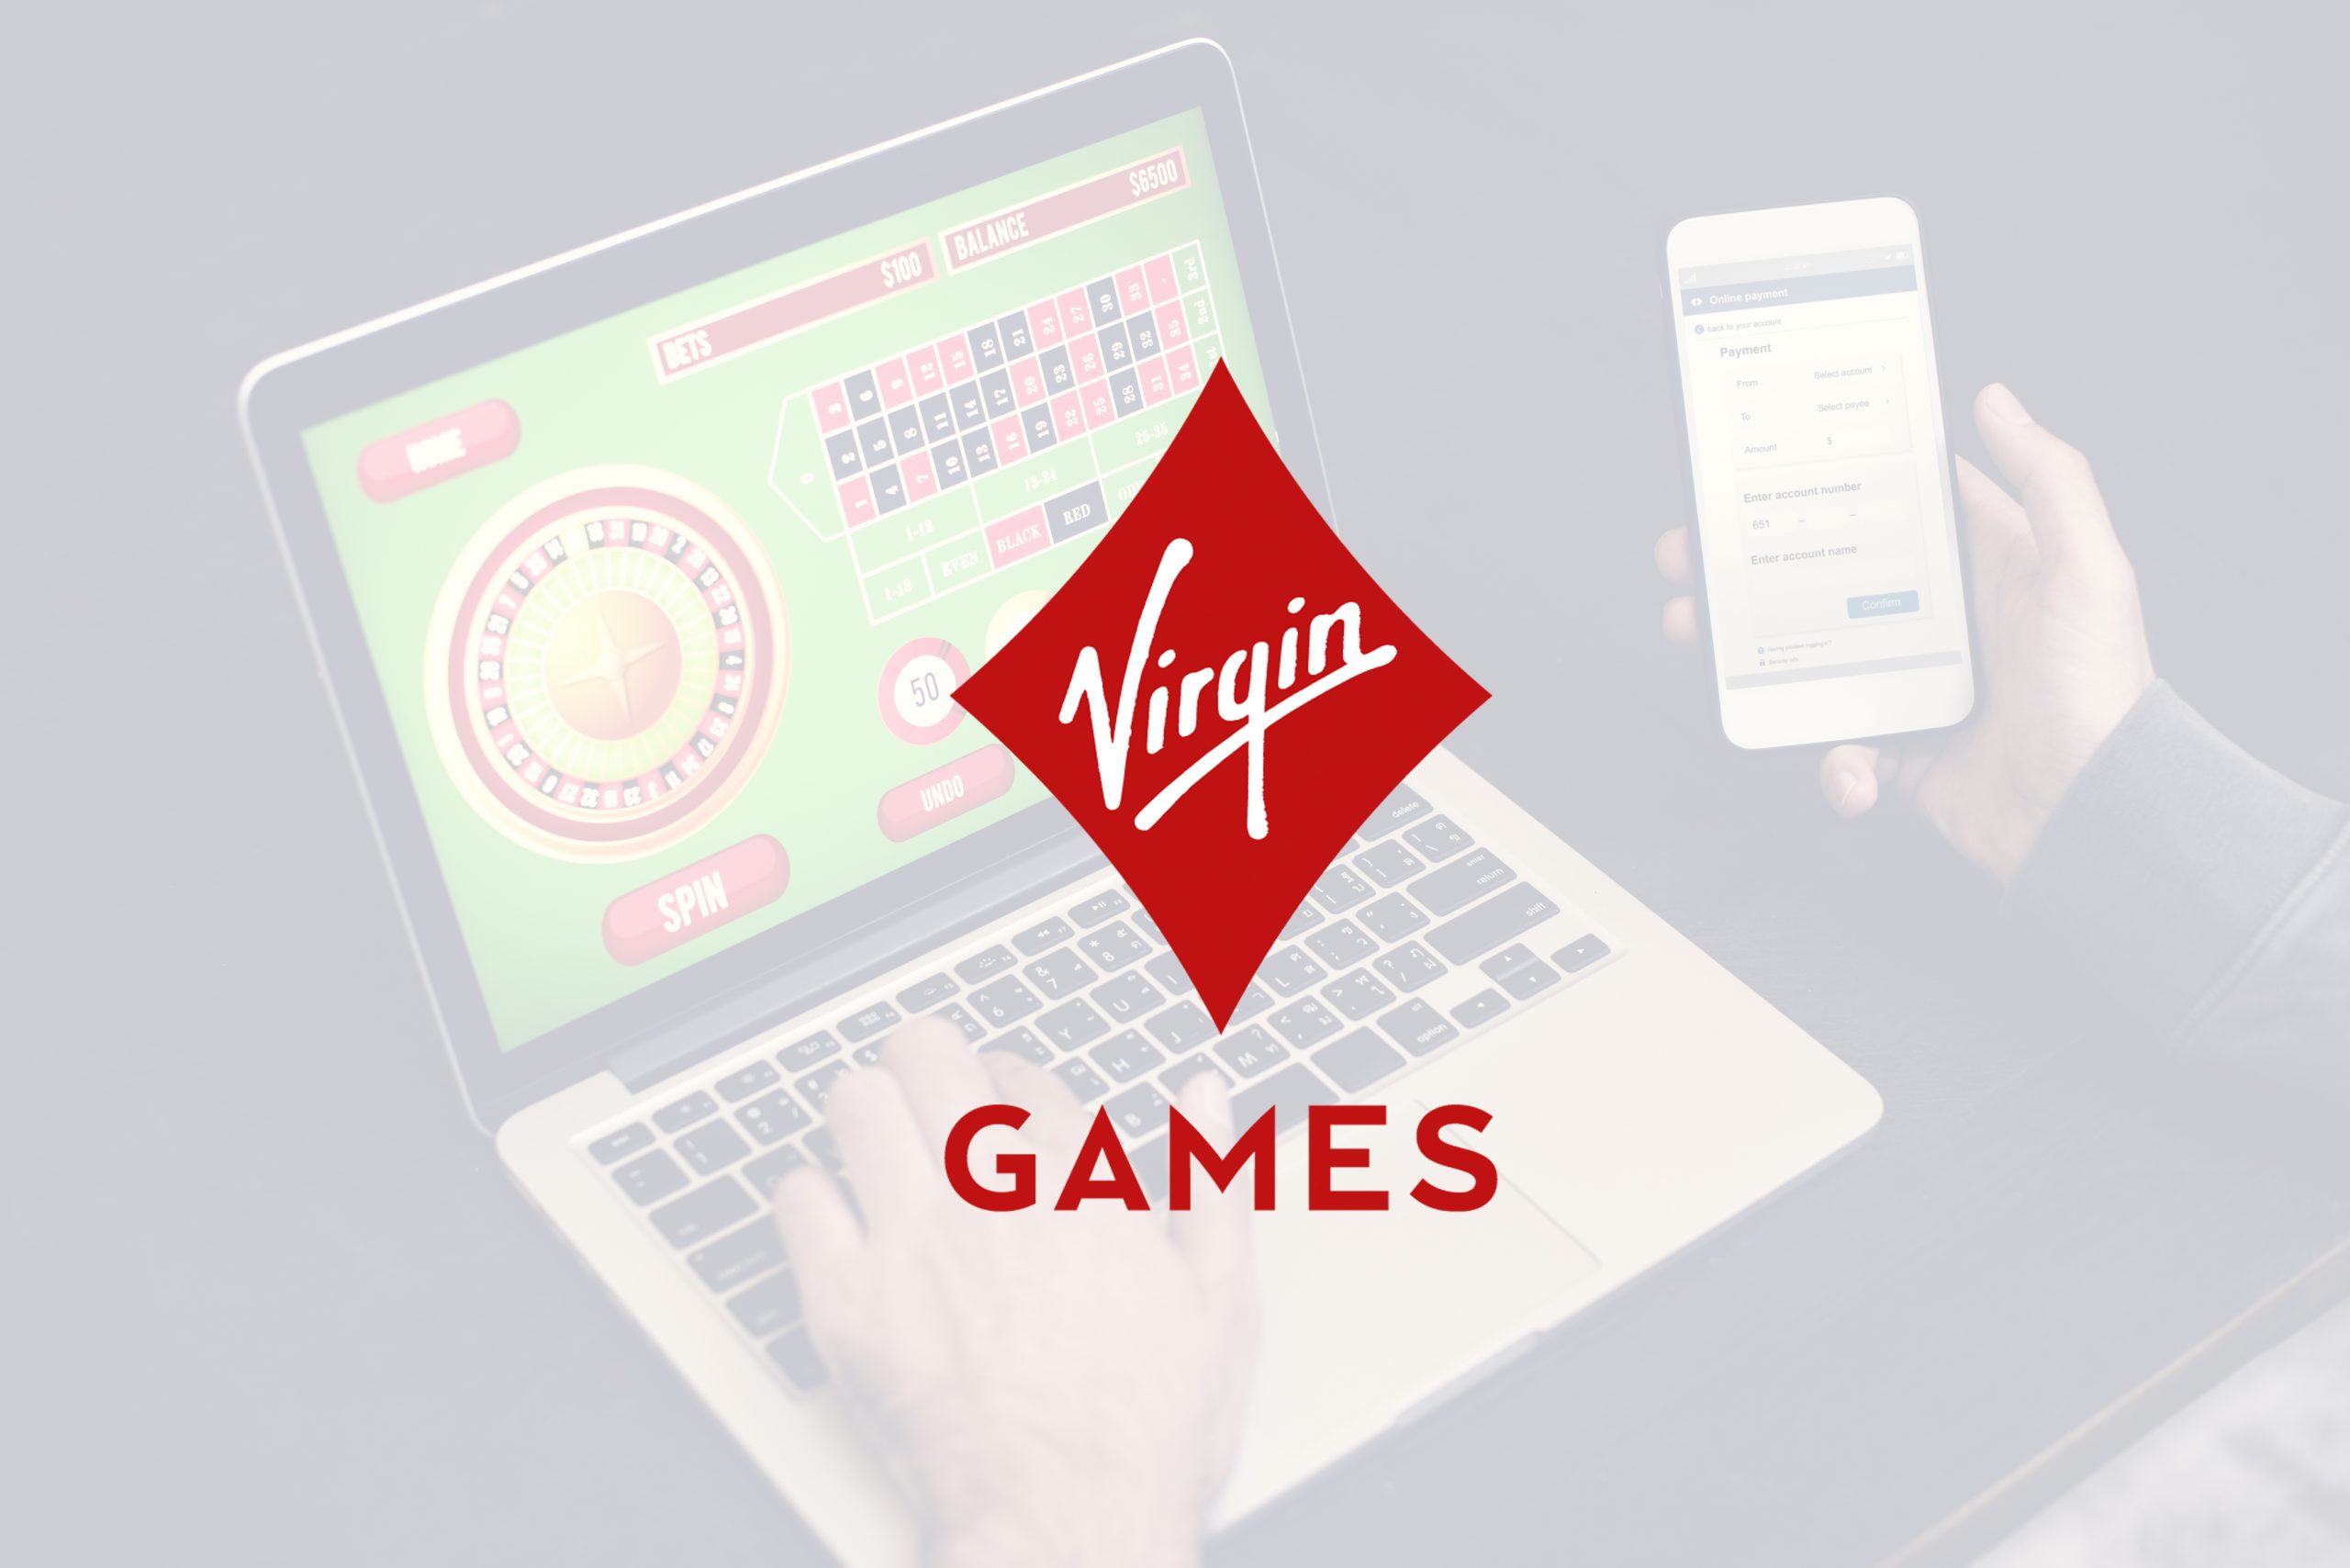 Top 5 Games In Virgin Games